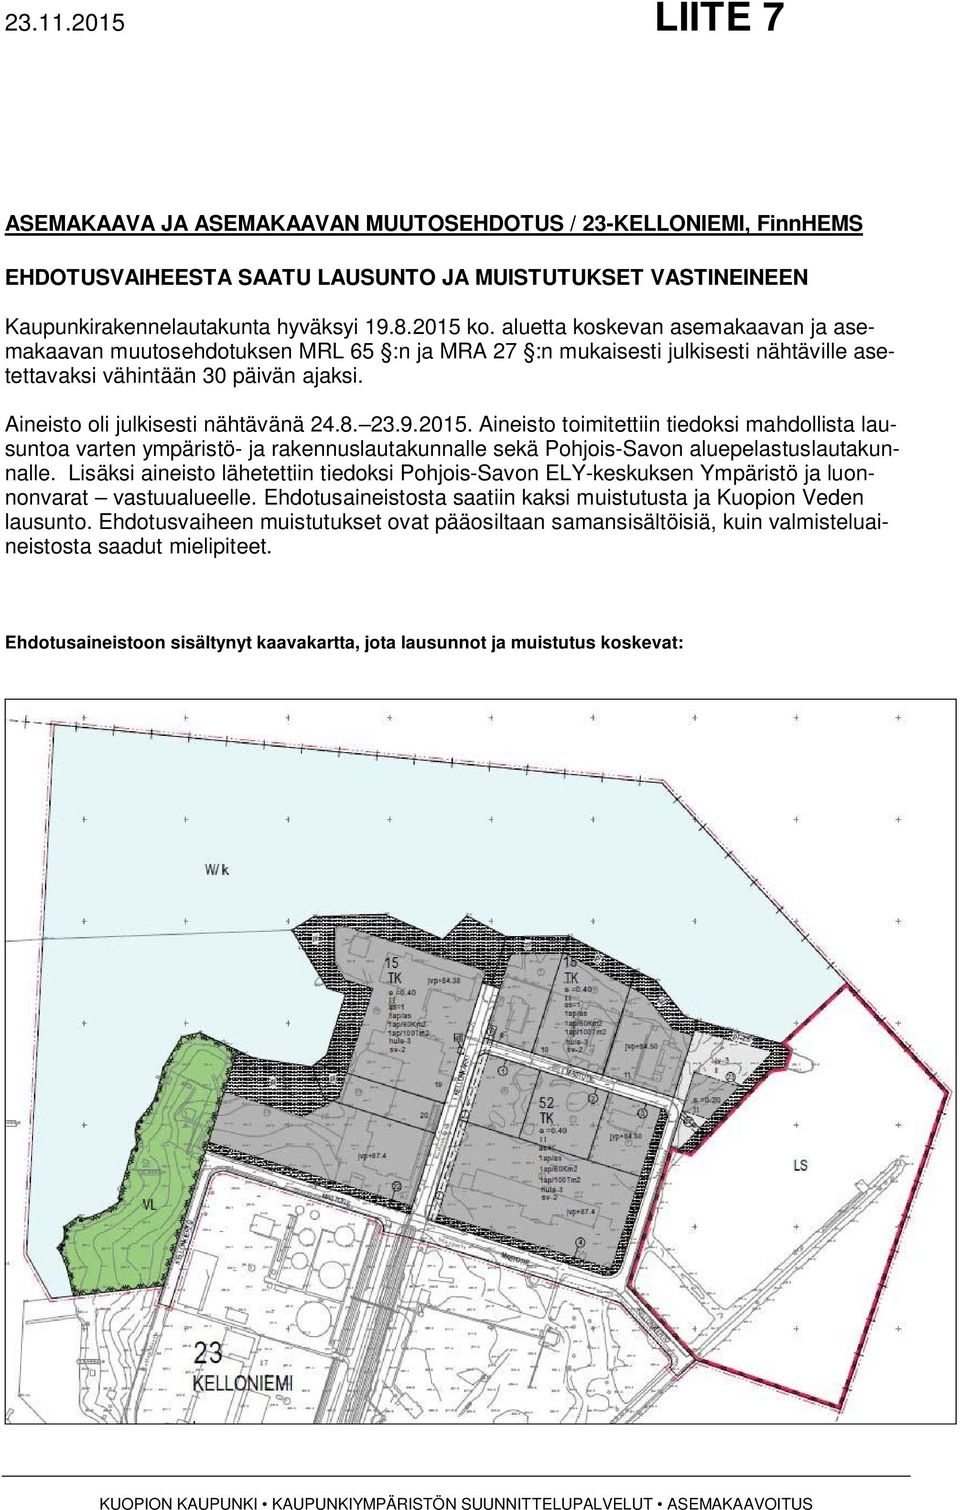 23.9.2015. Aineisto toimitettiin tiedoksi mahdollista lausuntoa varten ympäristö- ja rakennuslautakunnalle sekä Pohjois-Savon aluepelastuslautakunnalle.